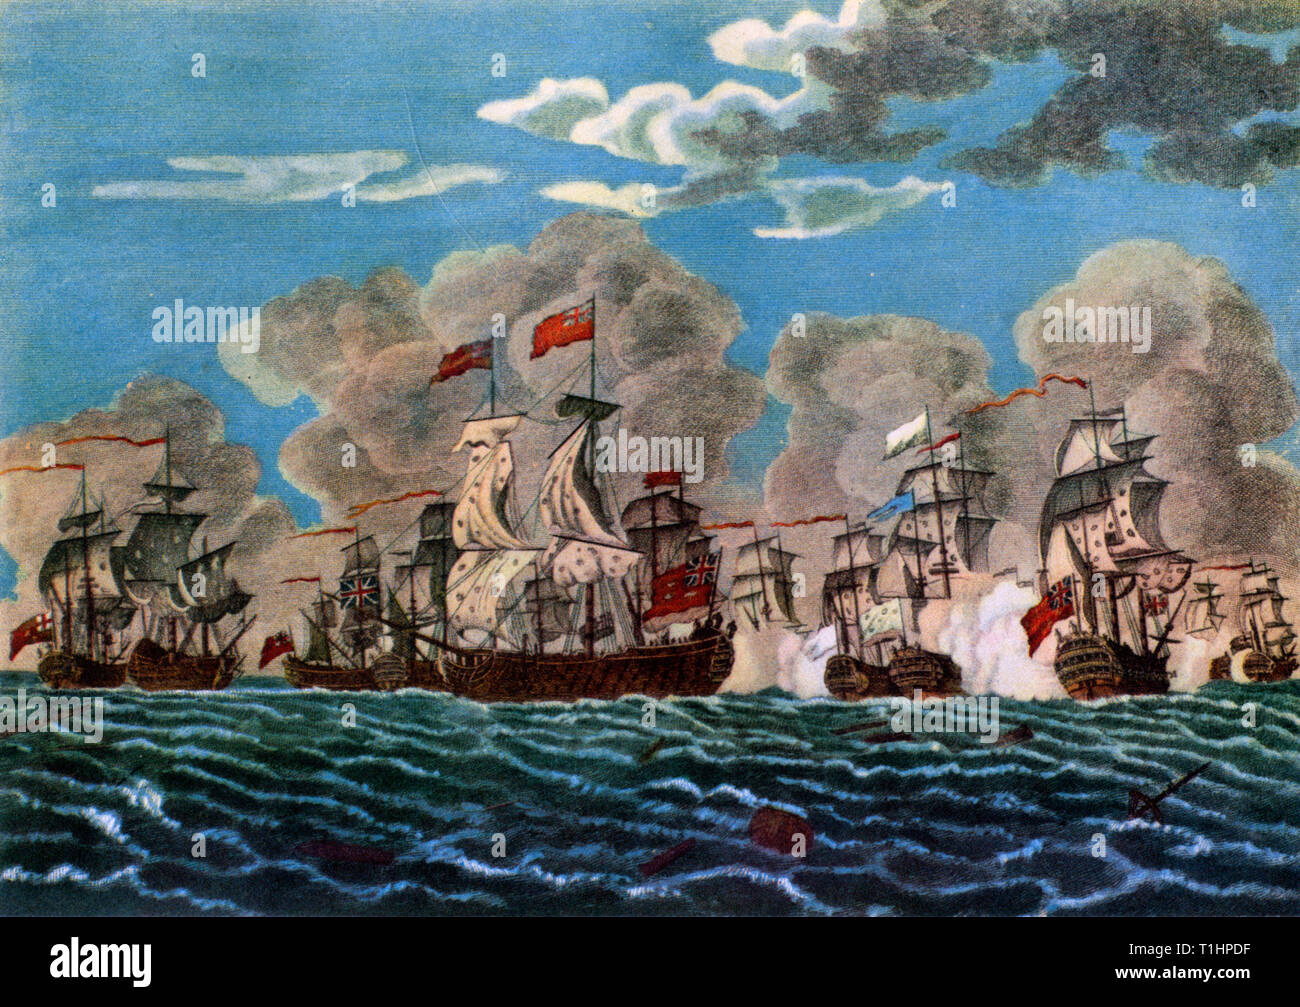 « The action Off Lagos, 18th août 1759 », 1781. Une bataille pendant la guerre de sept ans. Après Francis Swaine (1725-1782). La bataille navale de Lagos entre la Grande-Bretagne et la France a eu lieu les 18th et 19th août 1759, pendant la guerre de sept ans. La bataille a eu lieu au large des côtes de l'Espagne et du Portugal, et porte le nom de Lagos, Portugal. Pour les Britanniques, elle faisait partie de l'Annus mirabilis de 1759. Une gravure colorée publiée par Macgowan & Davis. Banque D'Images